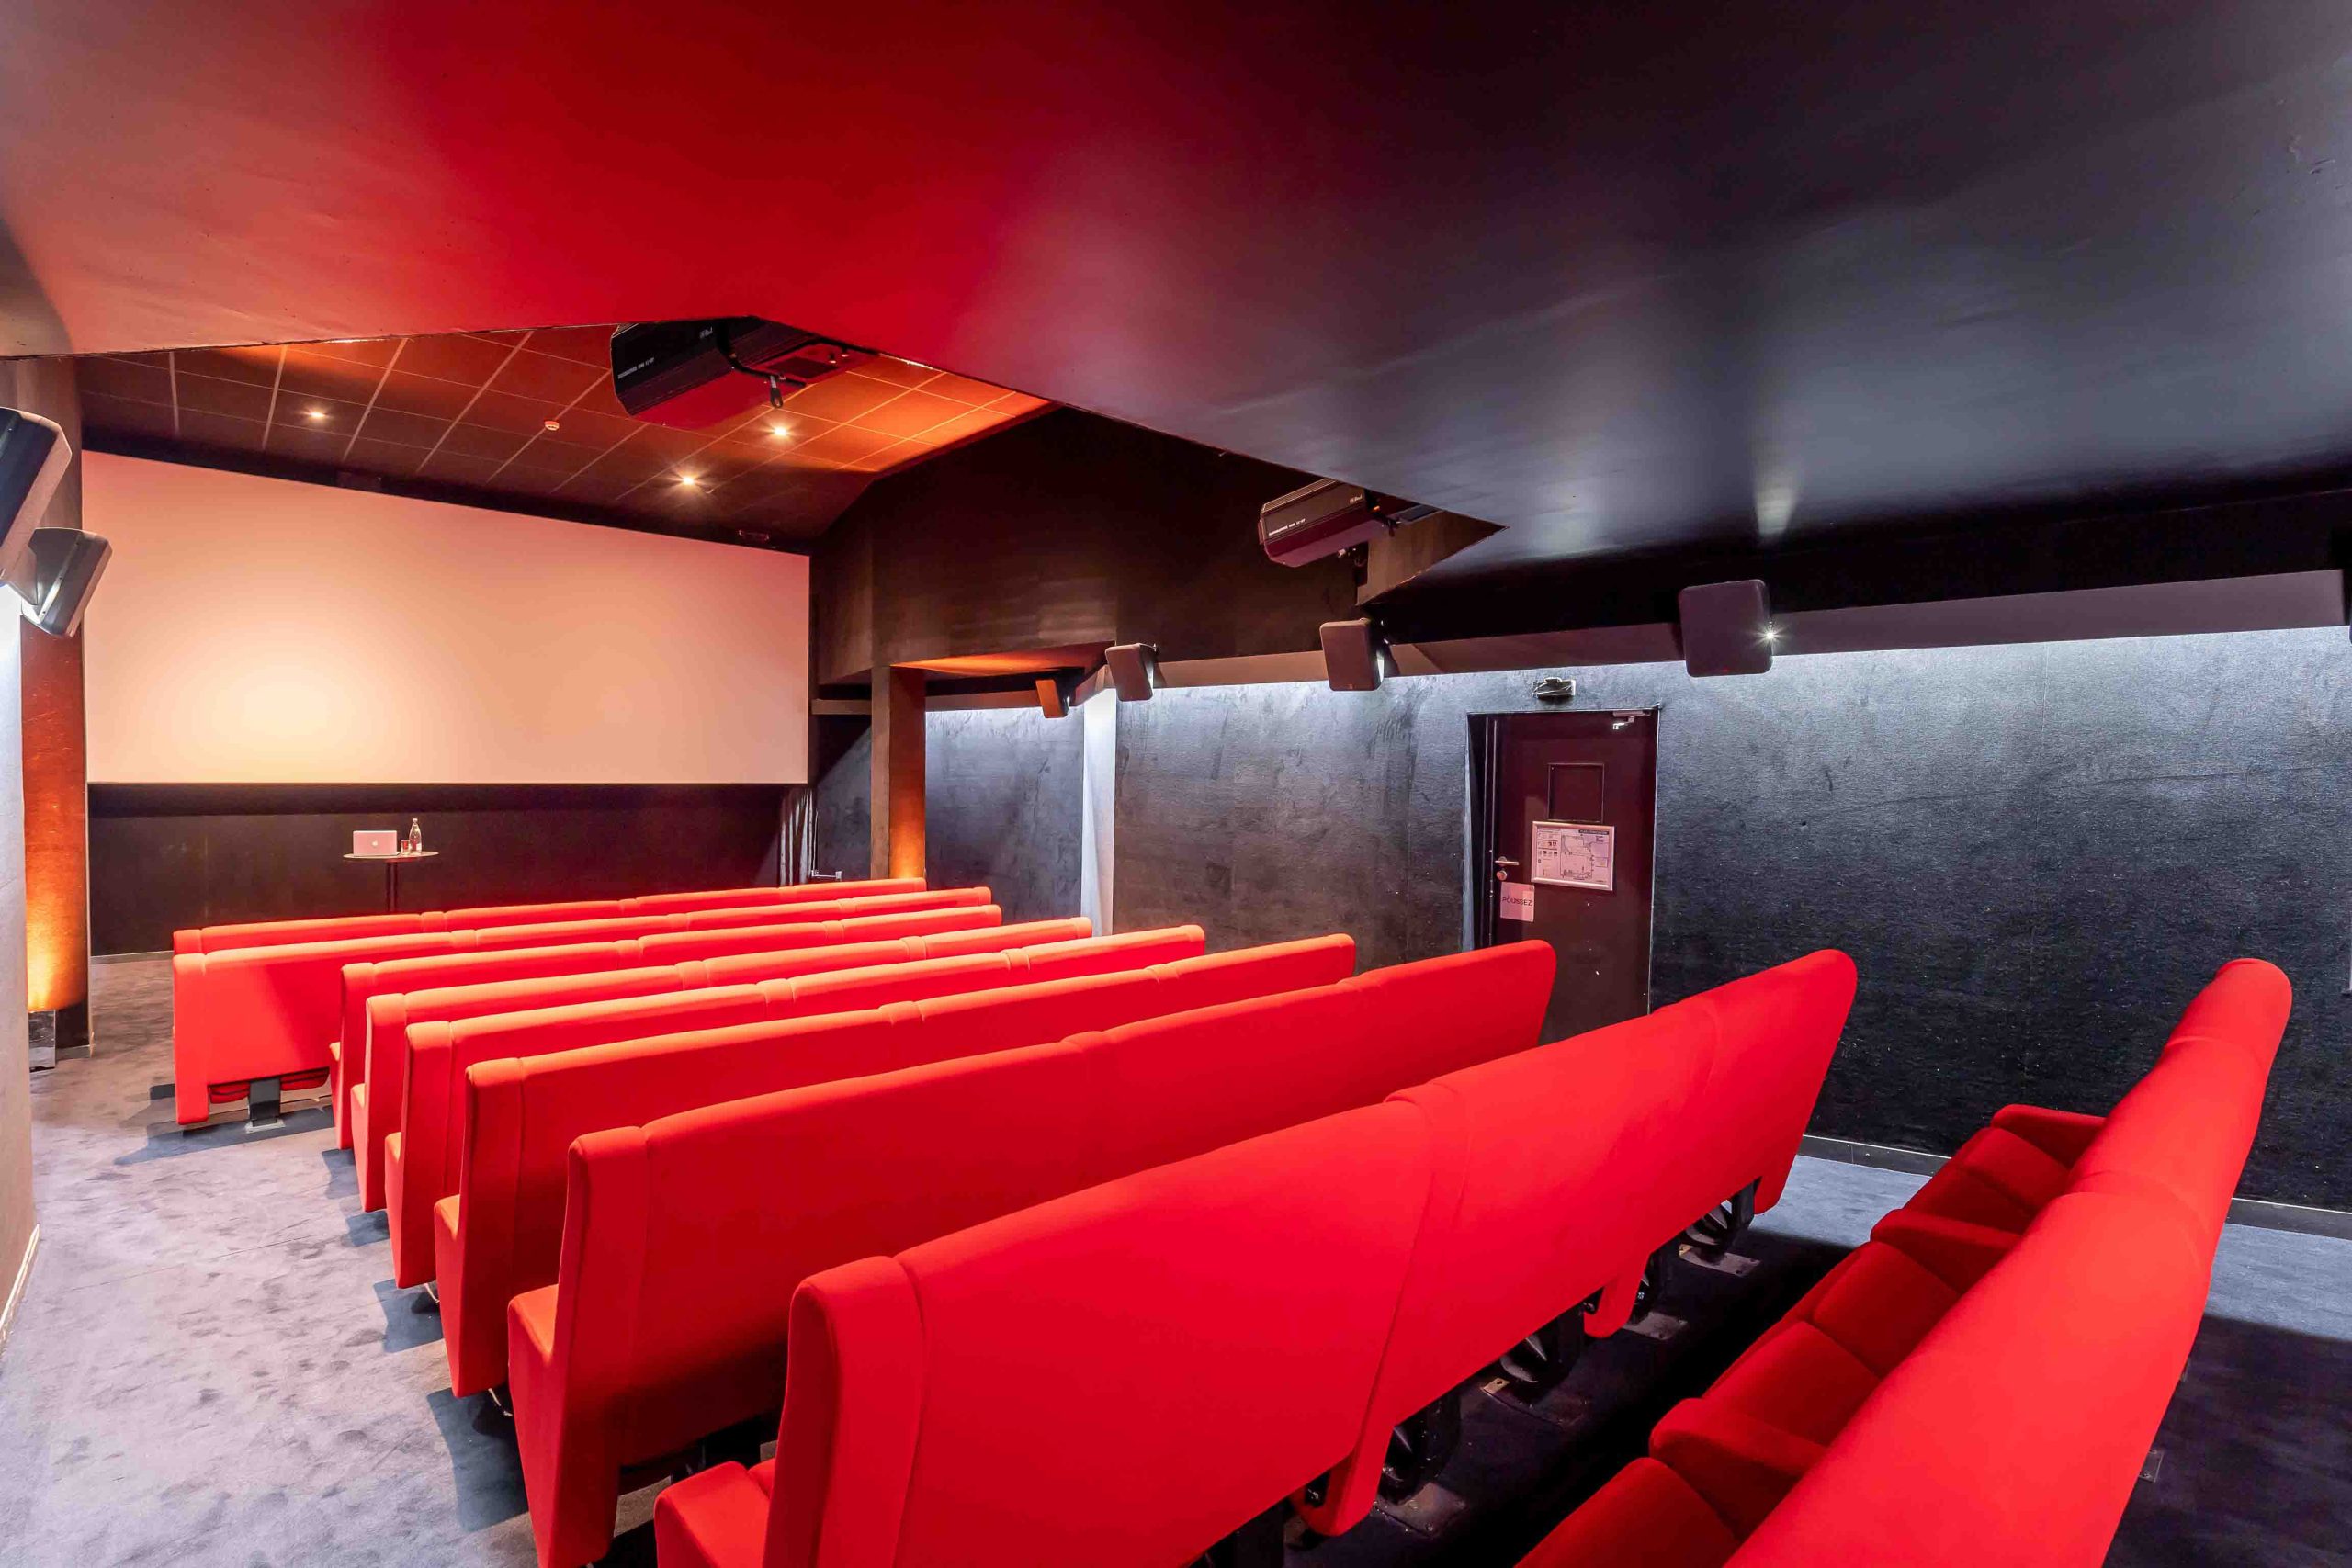 YOYO_Madame cinema_Empty room